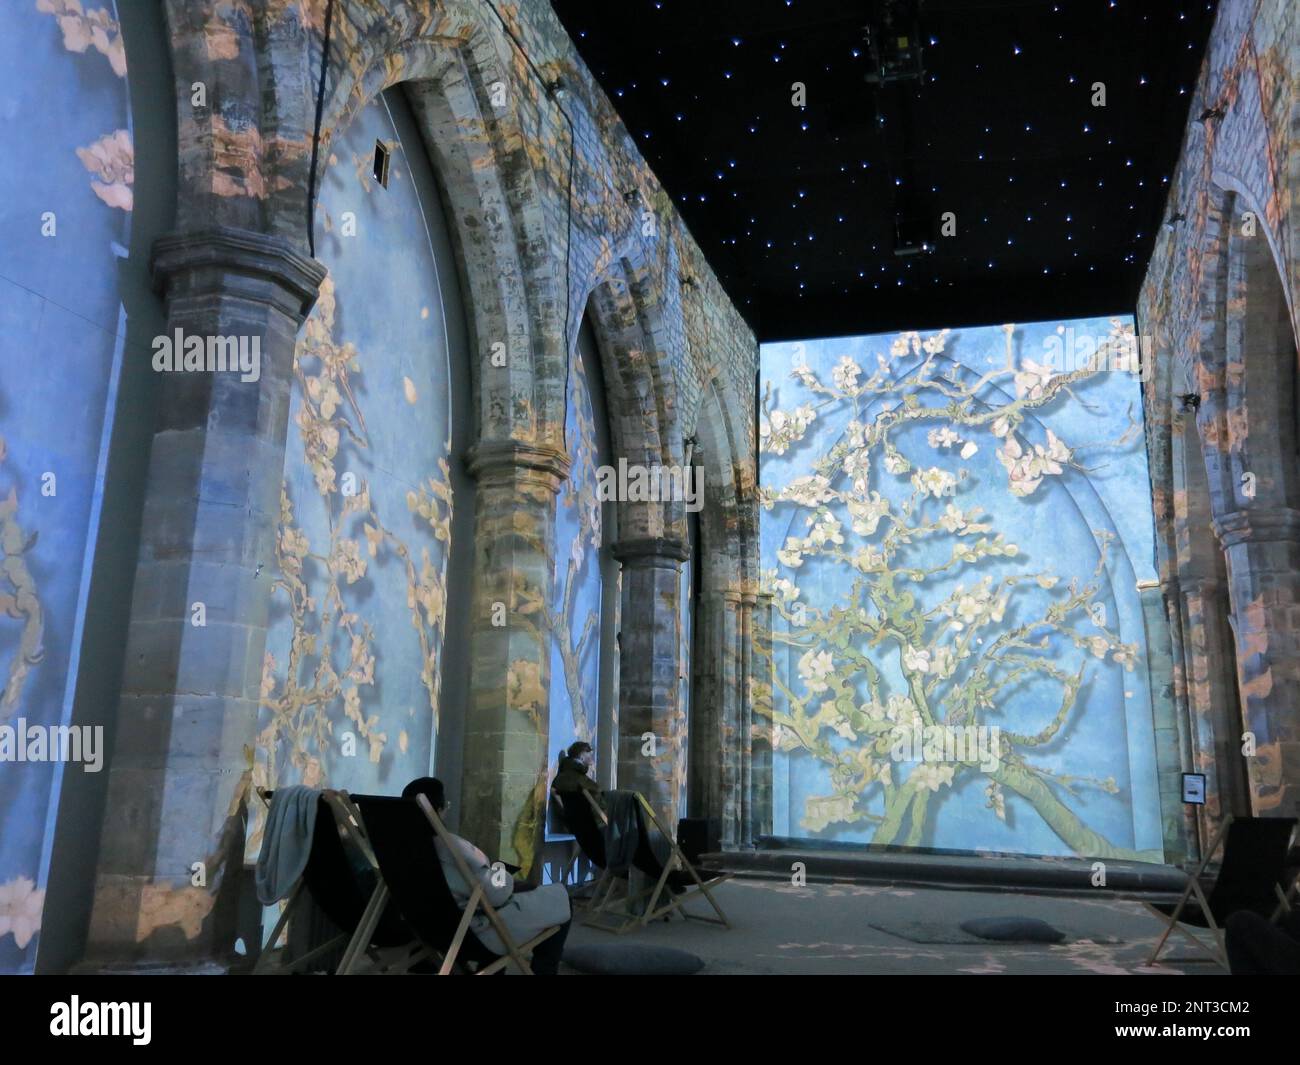 L'art immersif : une nouvelle façon de découvrir les œuvres de Van Gogh comme le tableau « Almond Blossom » projeté en 3D dans une ancienne église de Leicester. Banque D'Images